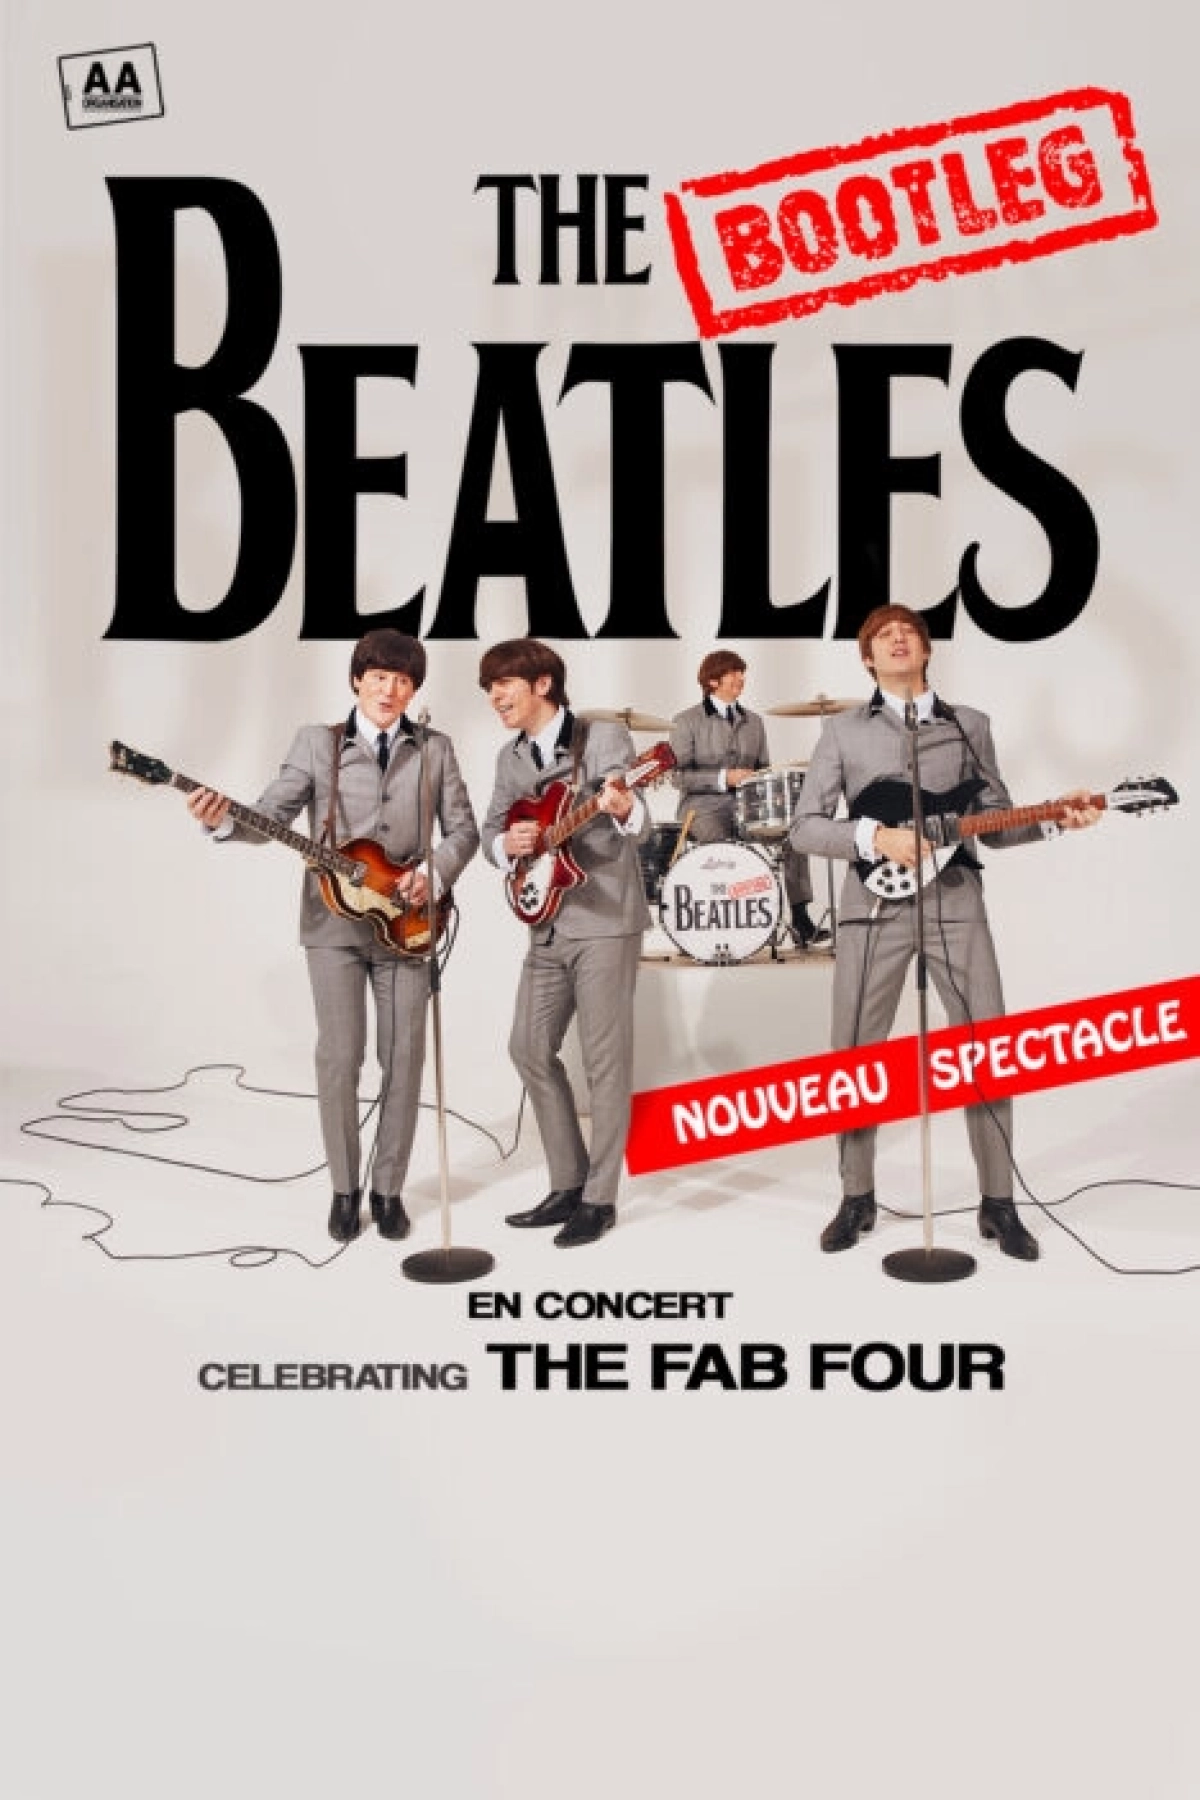 The Bootleg Beatles at Palais Nikaia Tickets